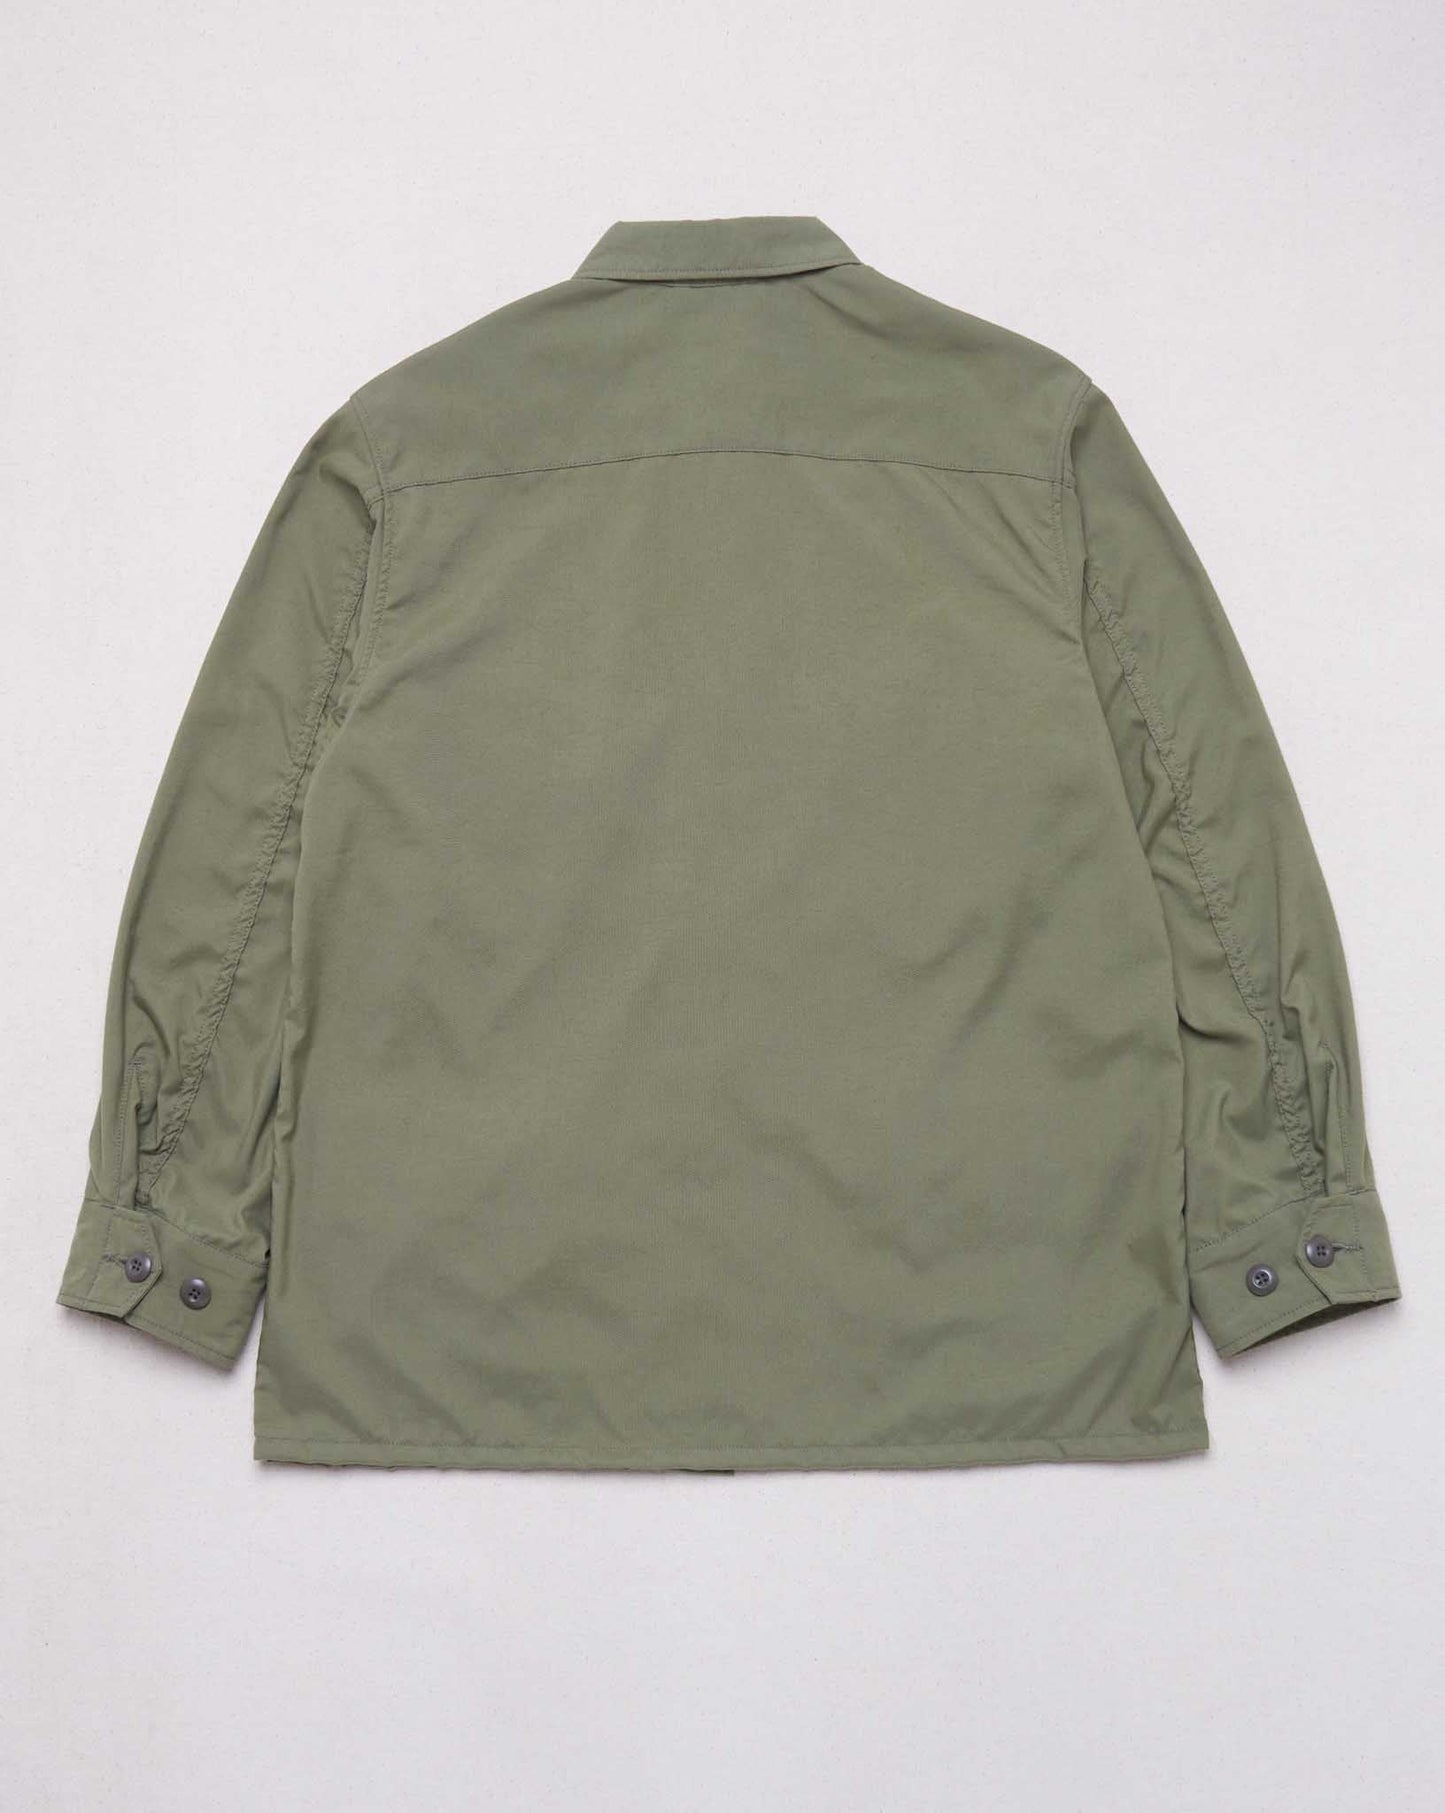 Addict Clothes ACVM Nylon Fatigue Jacket - Army Green -Addict Clothes - URAHARA